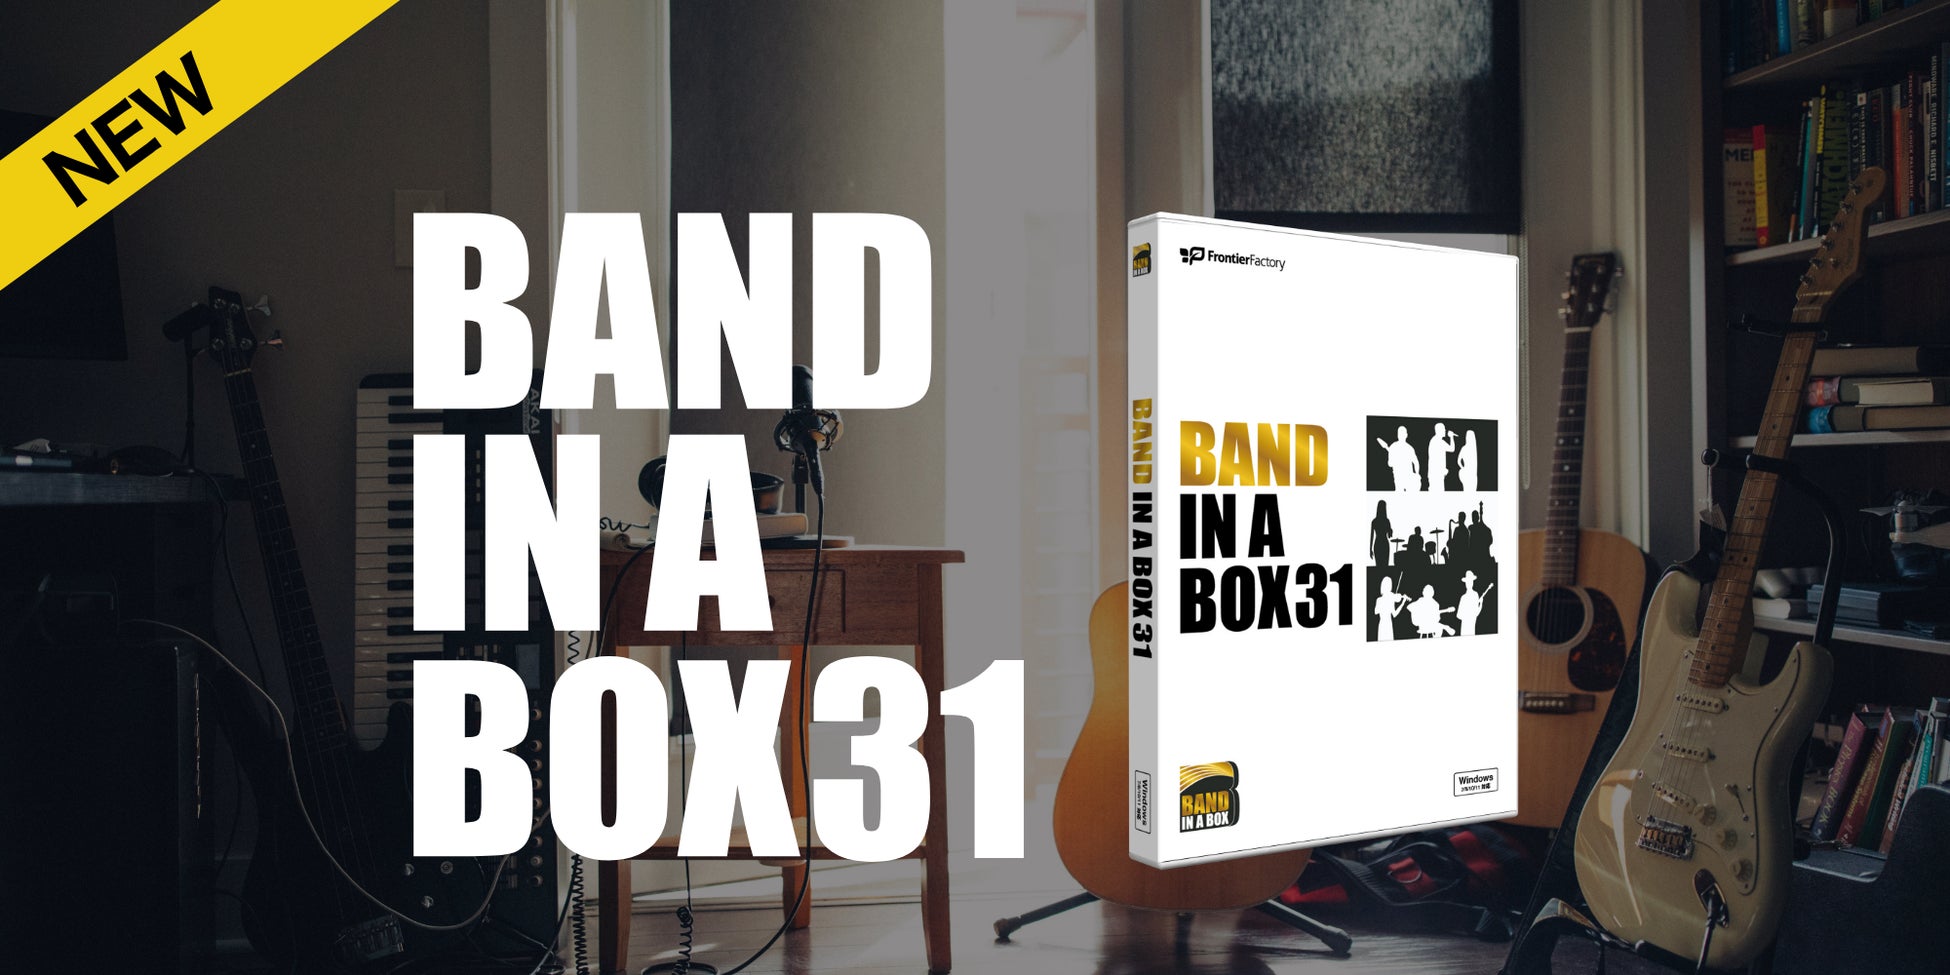 3ステップのかんたん操作で作曲可能な自動作曲ソフト『Band-in-a-Box 31 for Windows』『Band-in-a-Box 31 for Mac』ダウンロード版先行発売のお知らせ